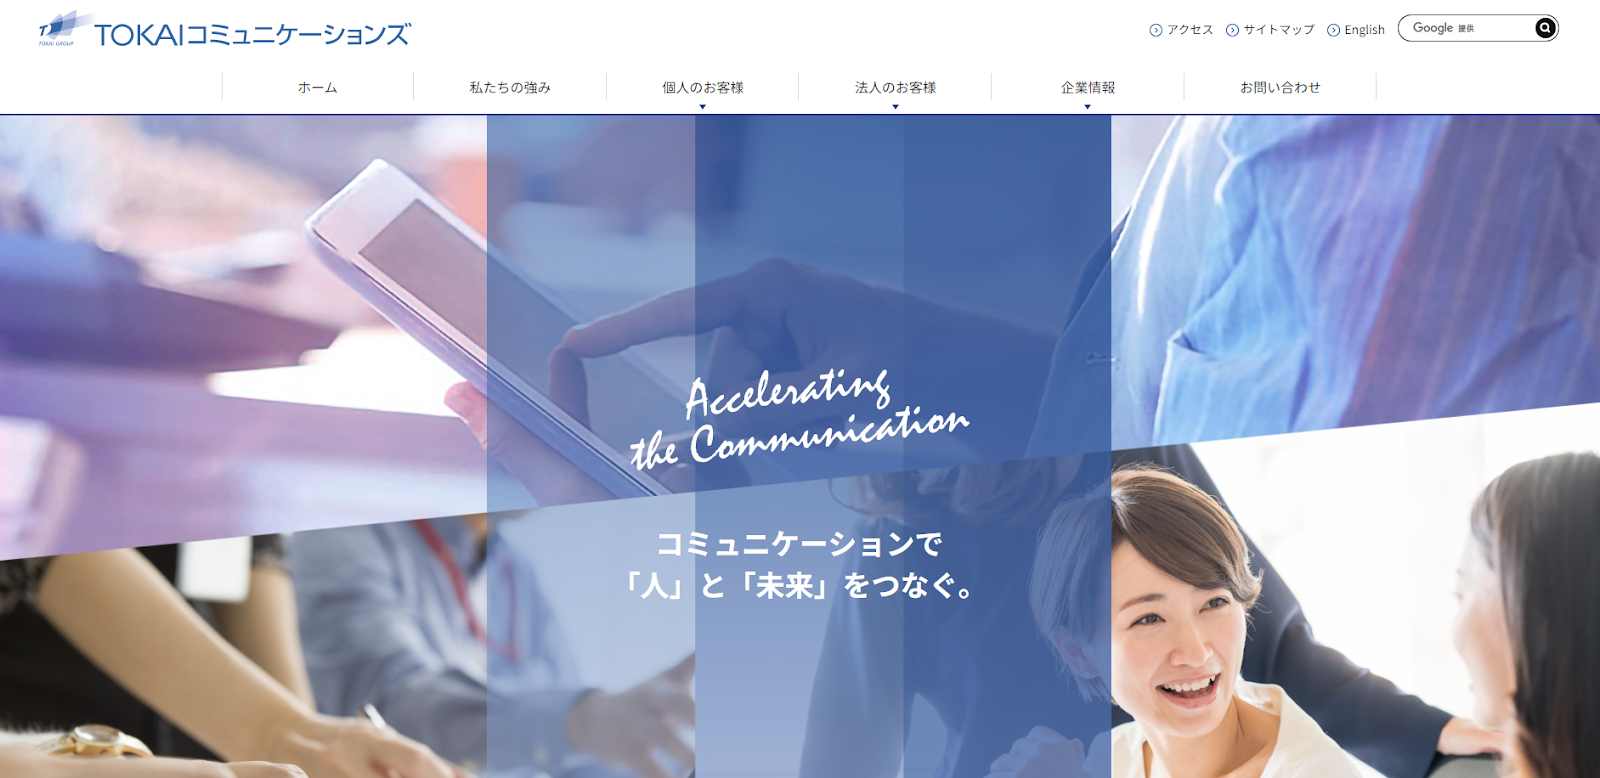 TOKAIコミュニケーションズがAWS BIツール デモウェビナーを開催へ